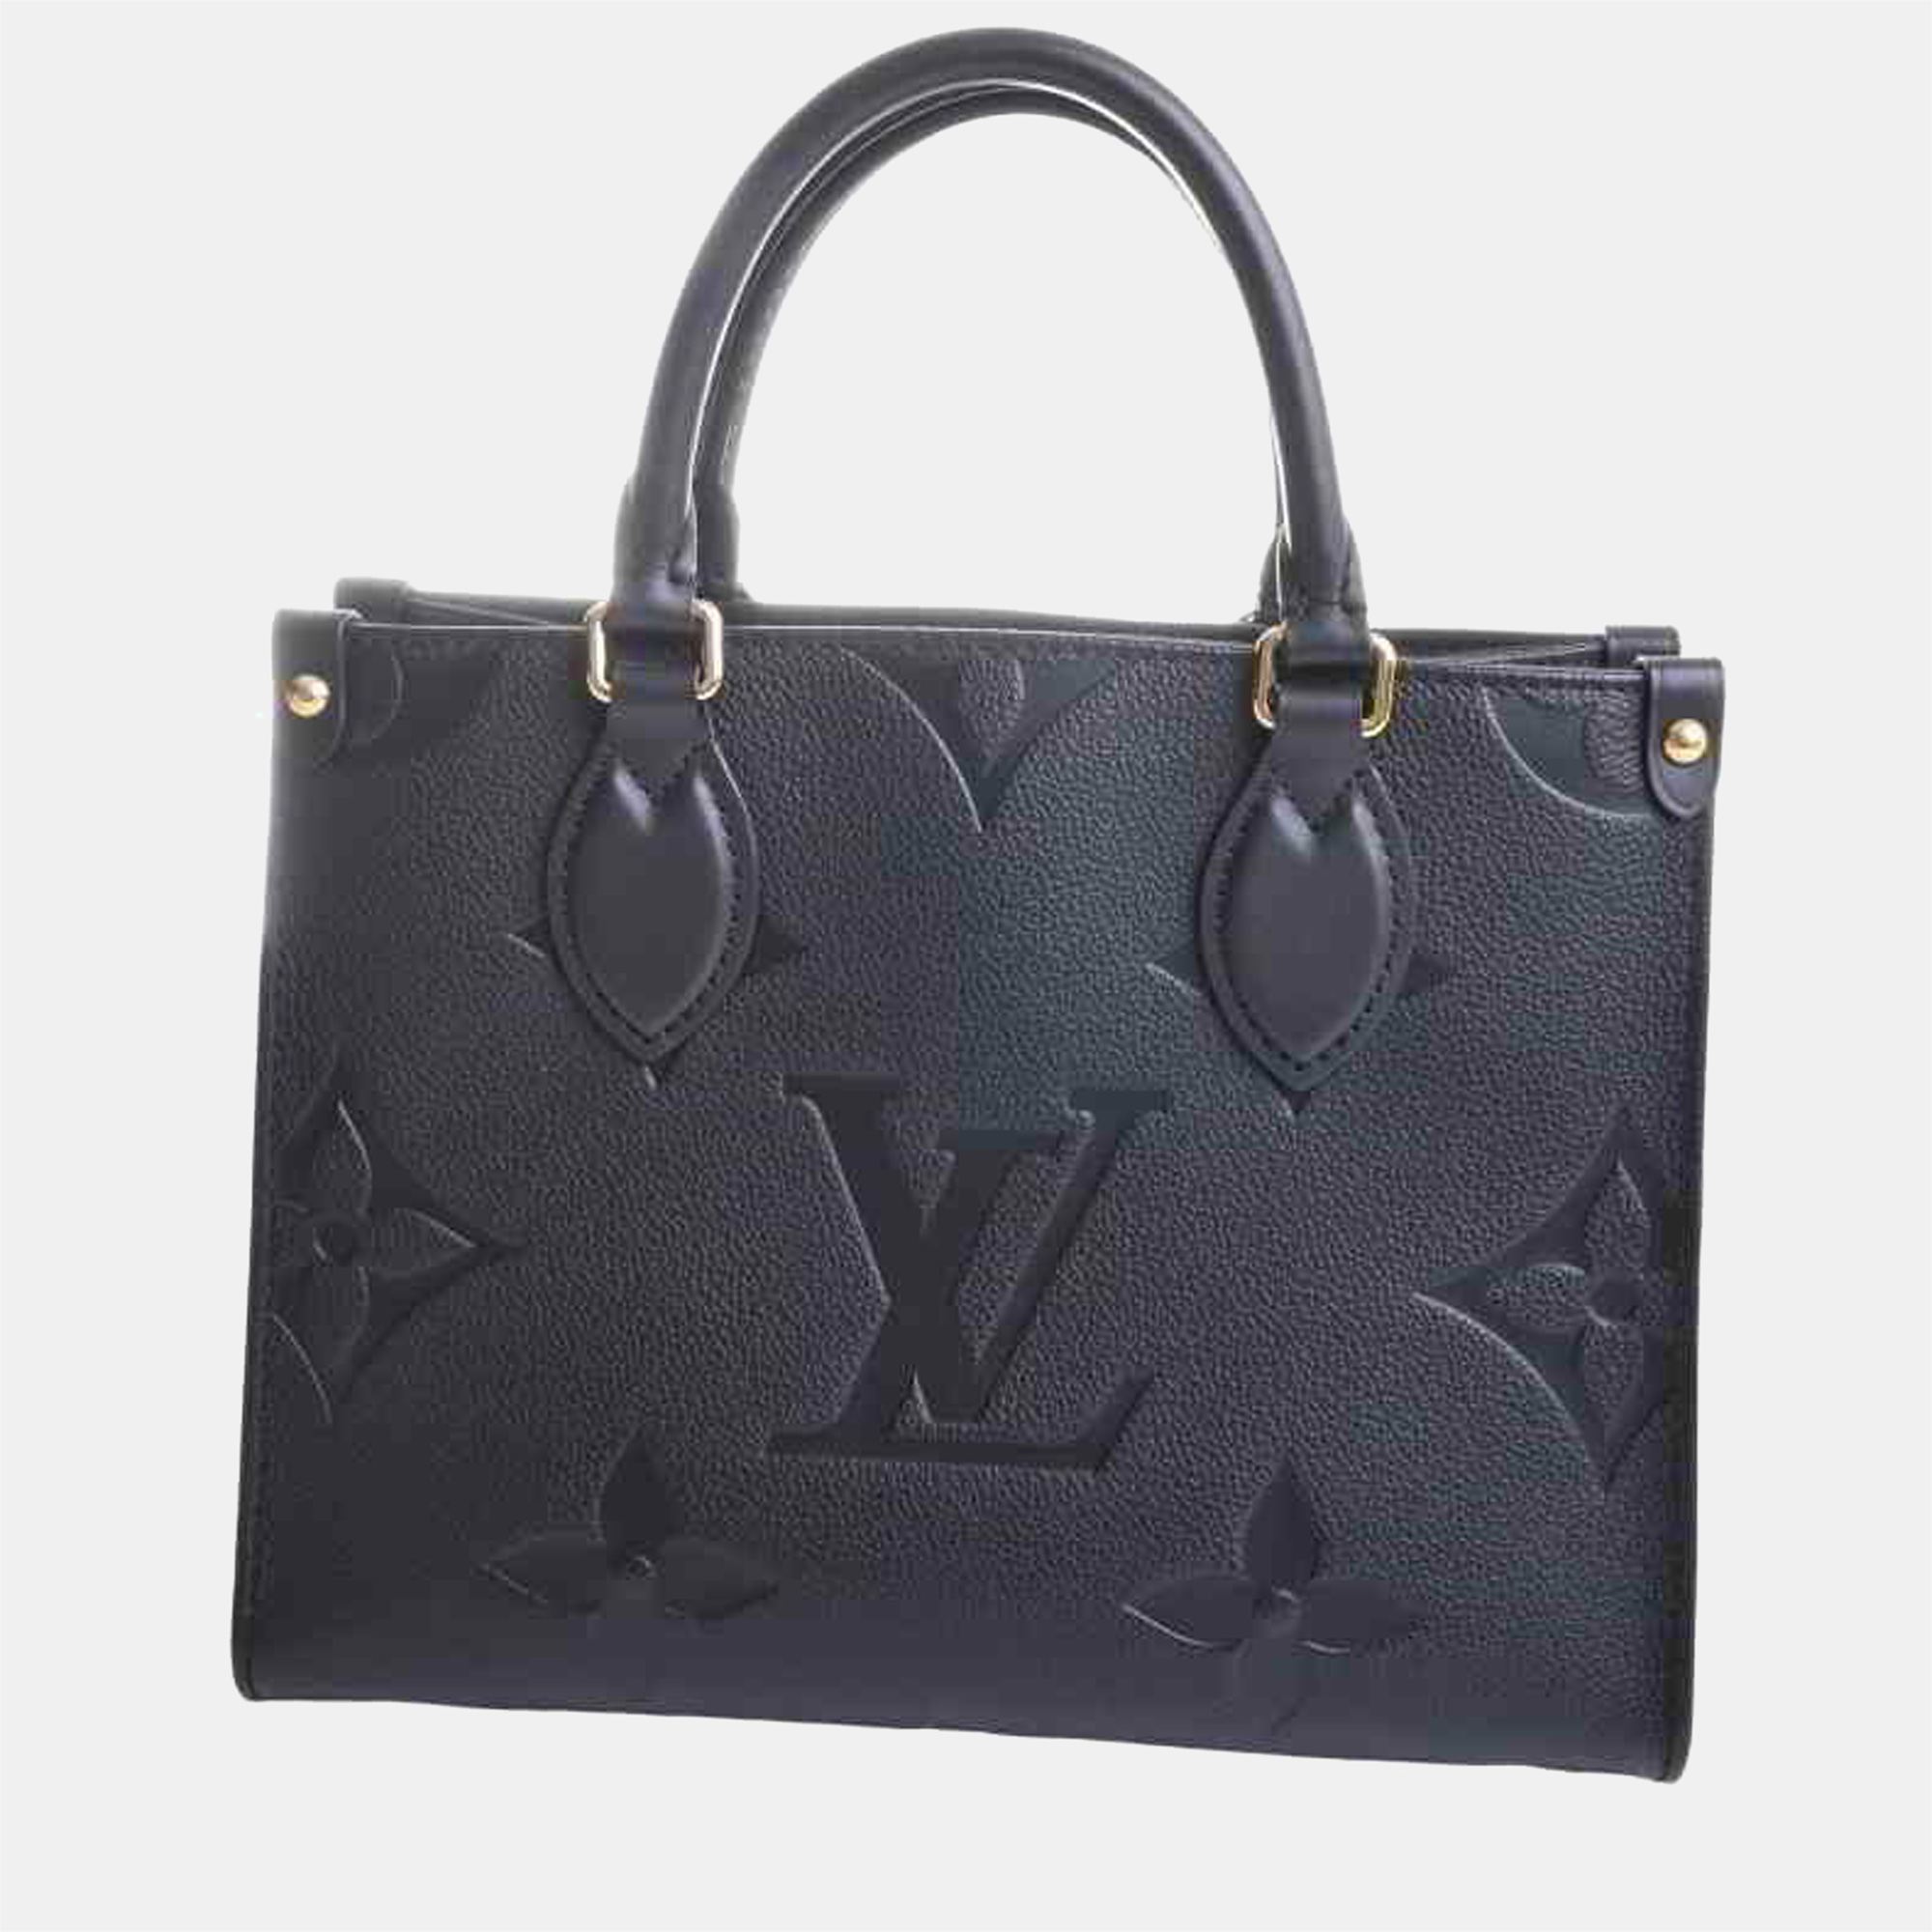 

Louis Vuitton Black Monogram empreinte Leather On The Go PM Tote Bag